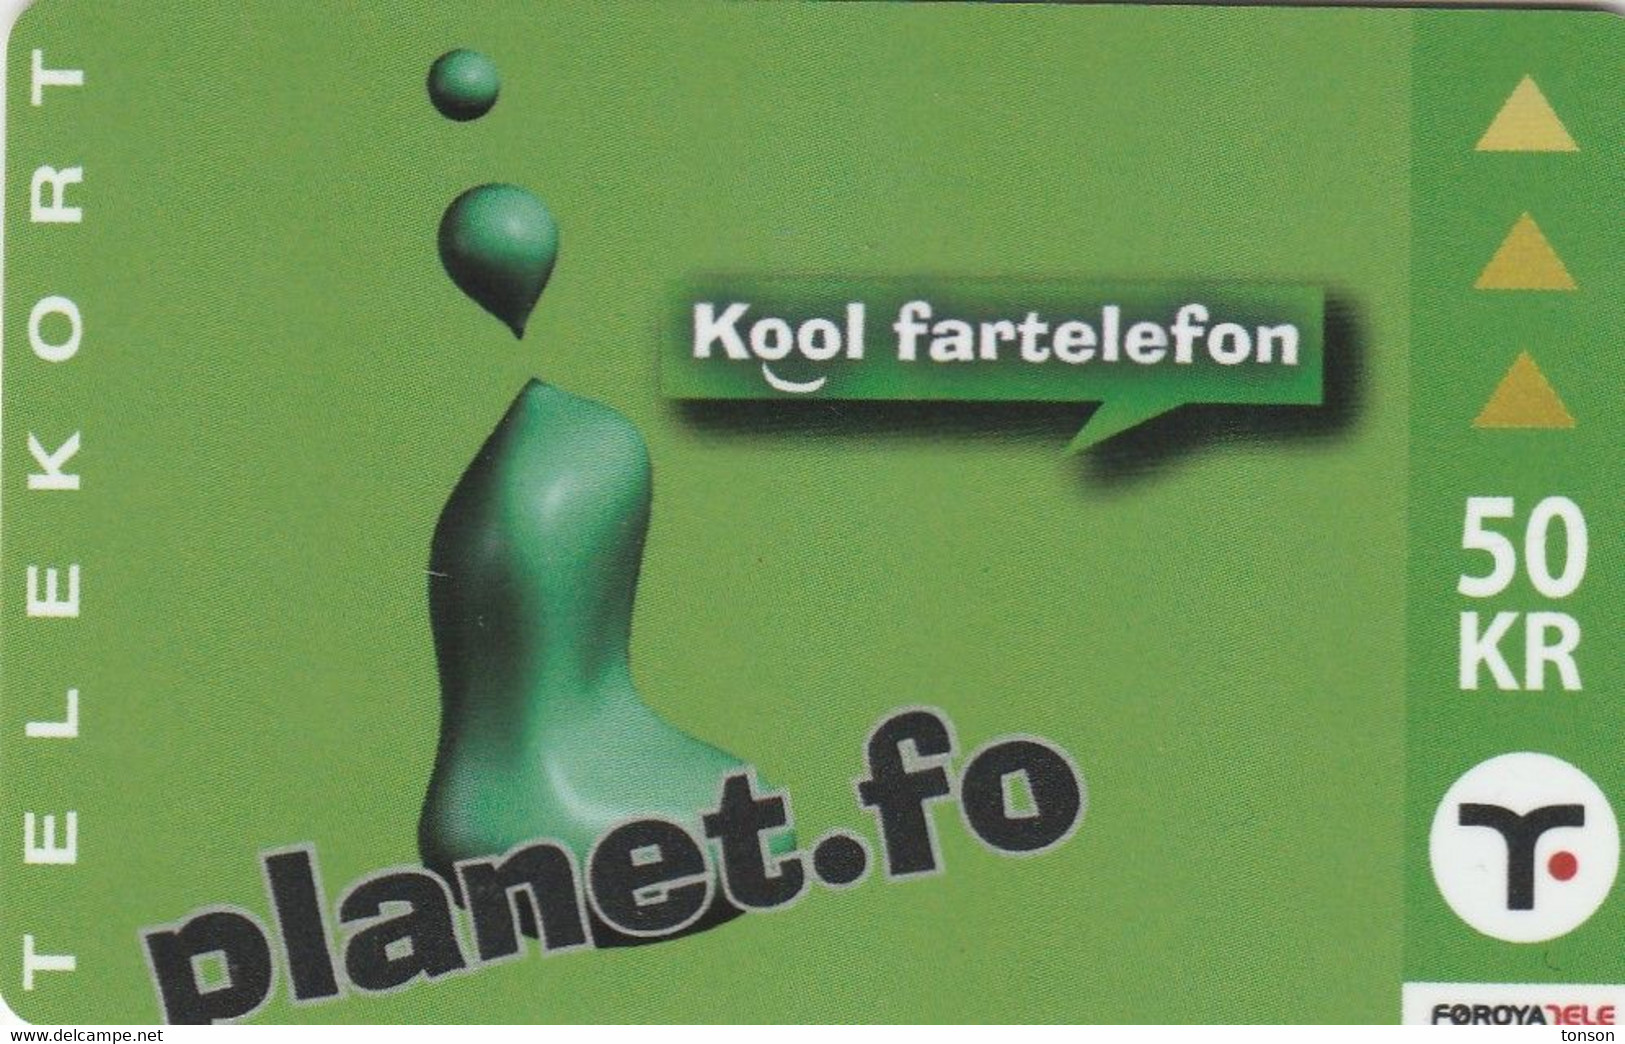 Faroe Islands, OR-003, 50 Kr ,  Planet.fo, Kool Fartelefon, 2 Scans. - Faeroër